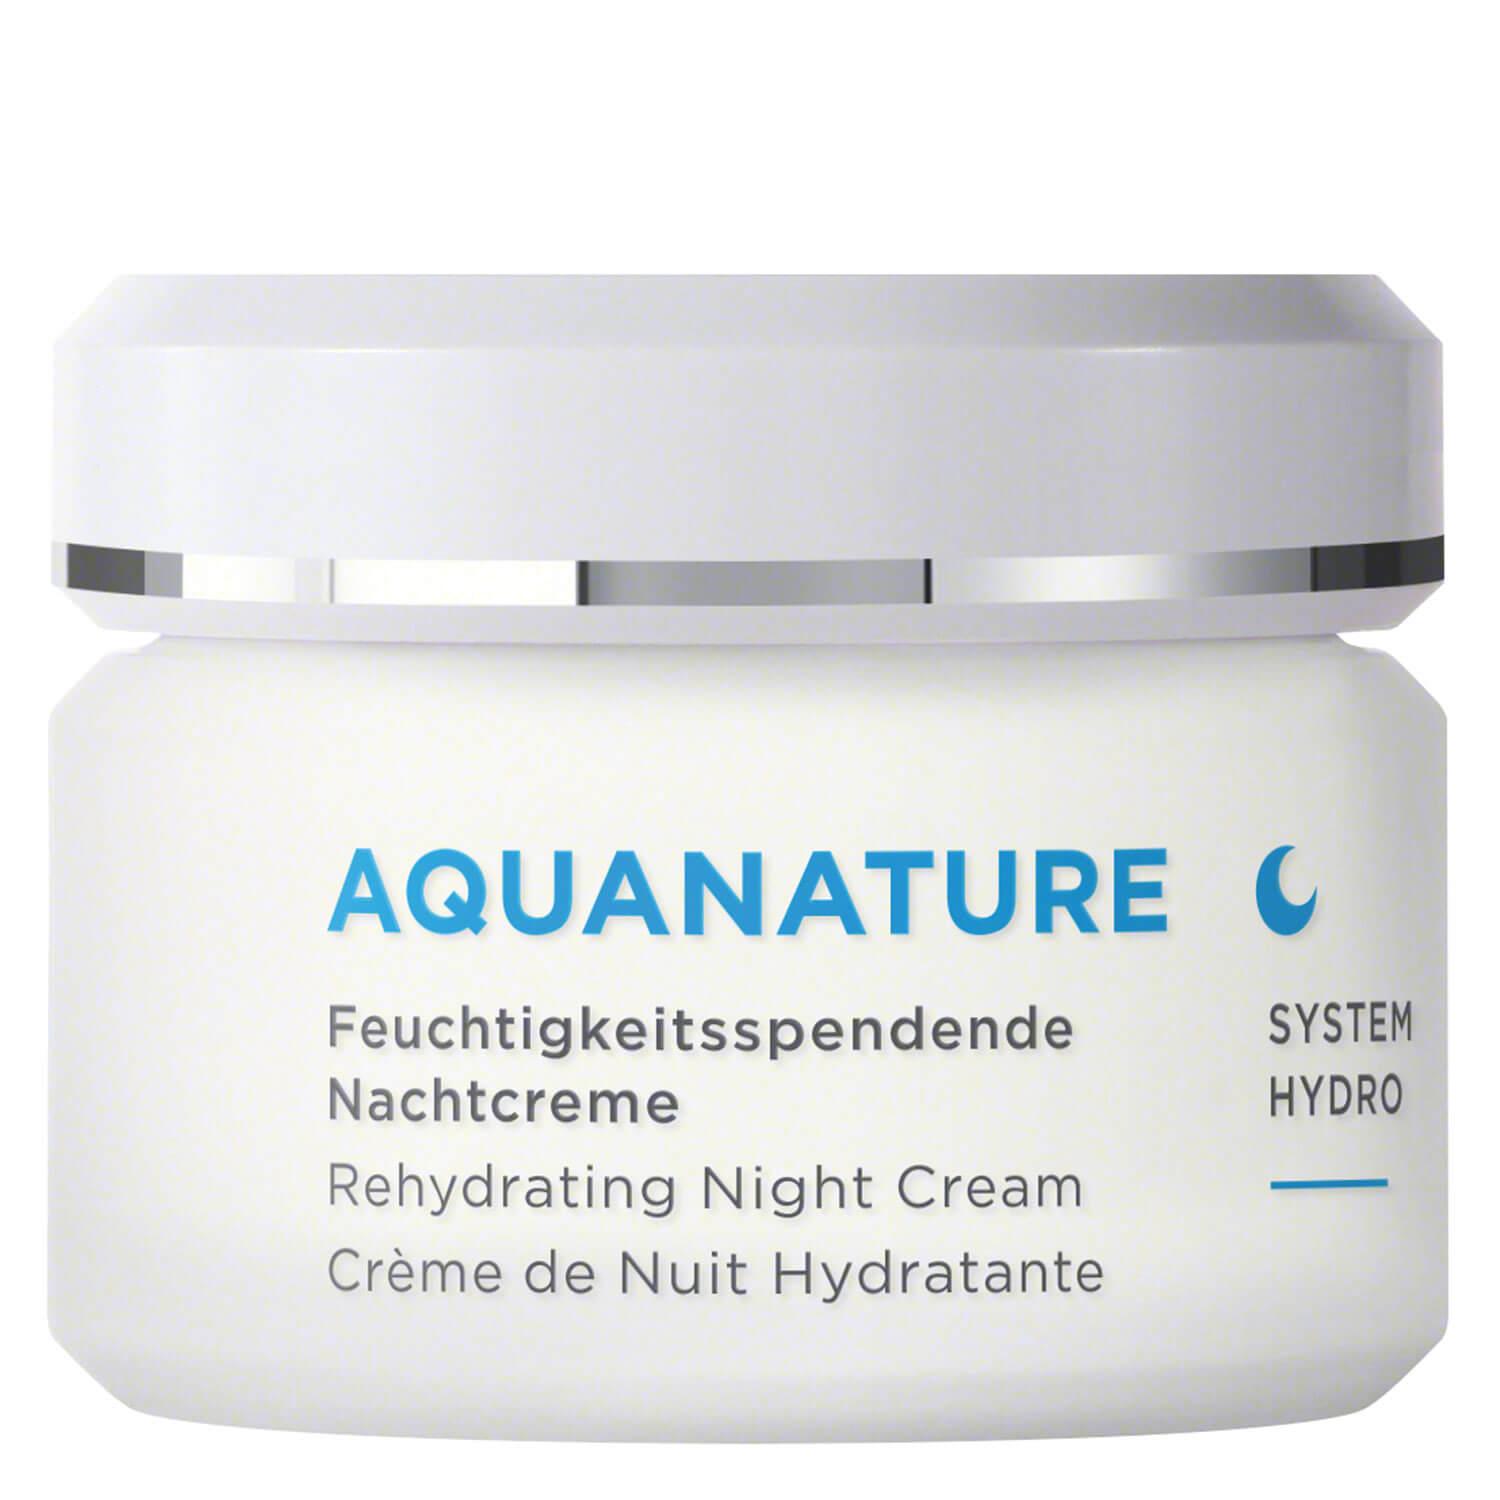 Aquanature - Feuchtigkeitsspendende Nachtcreme